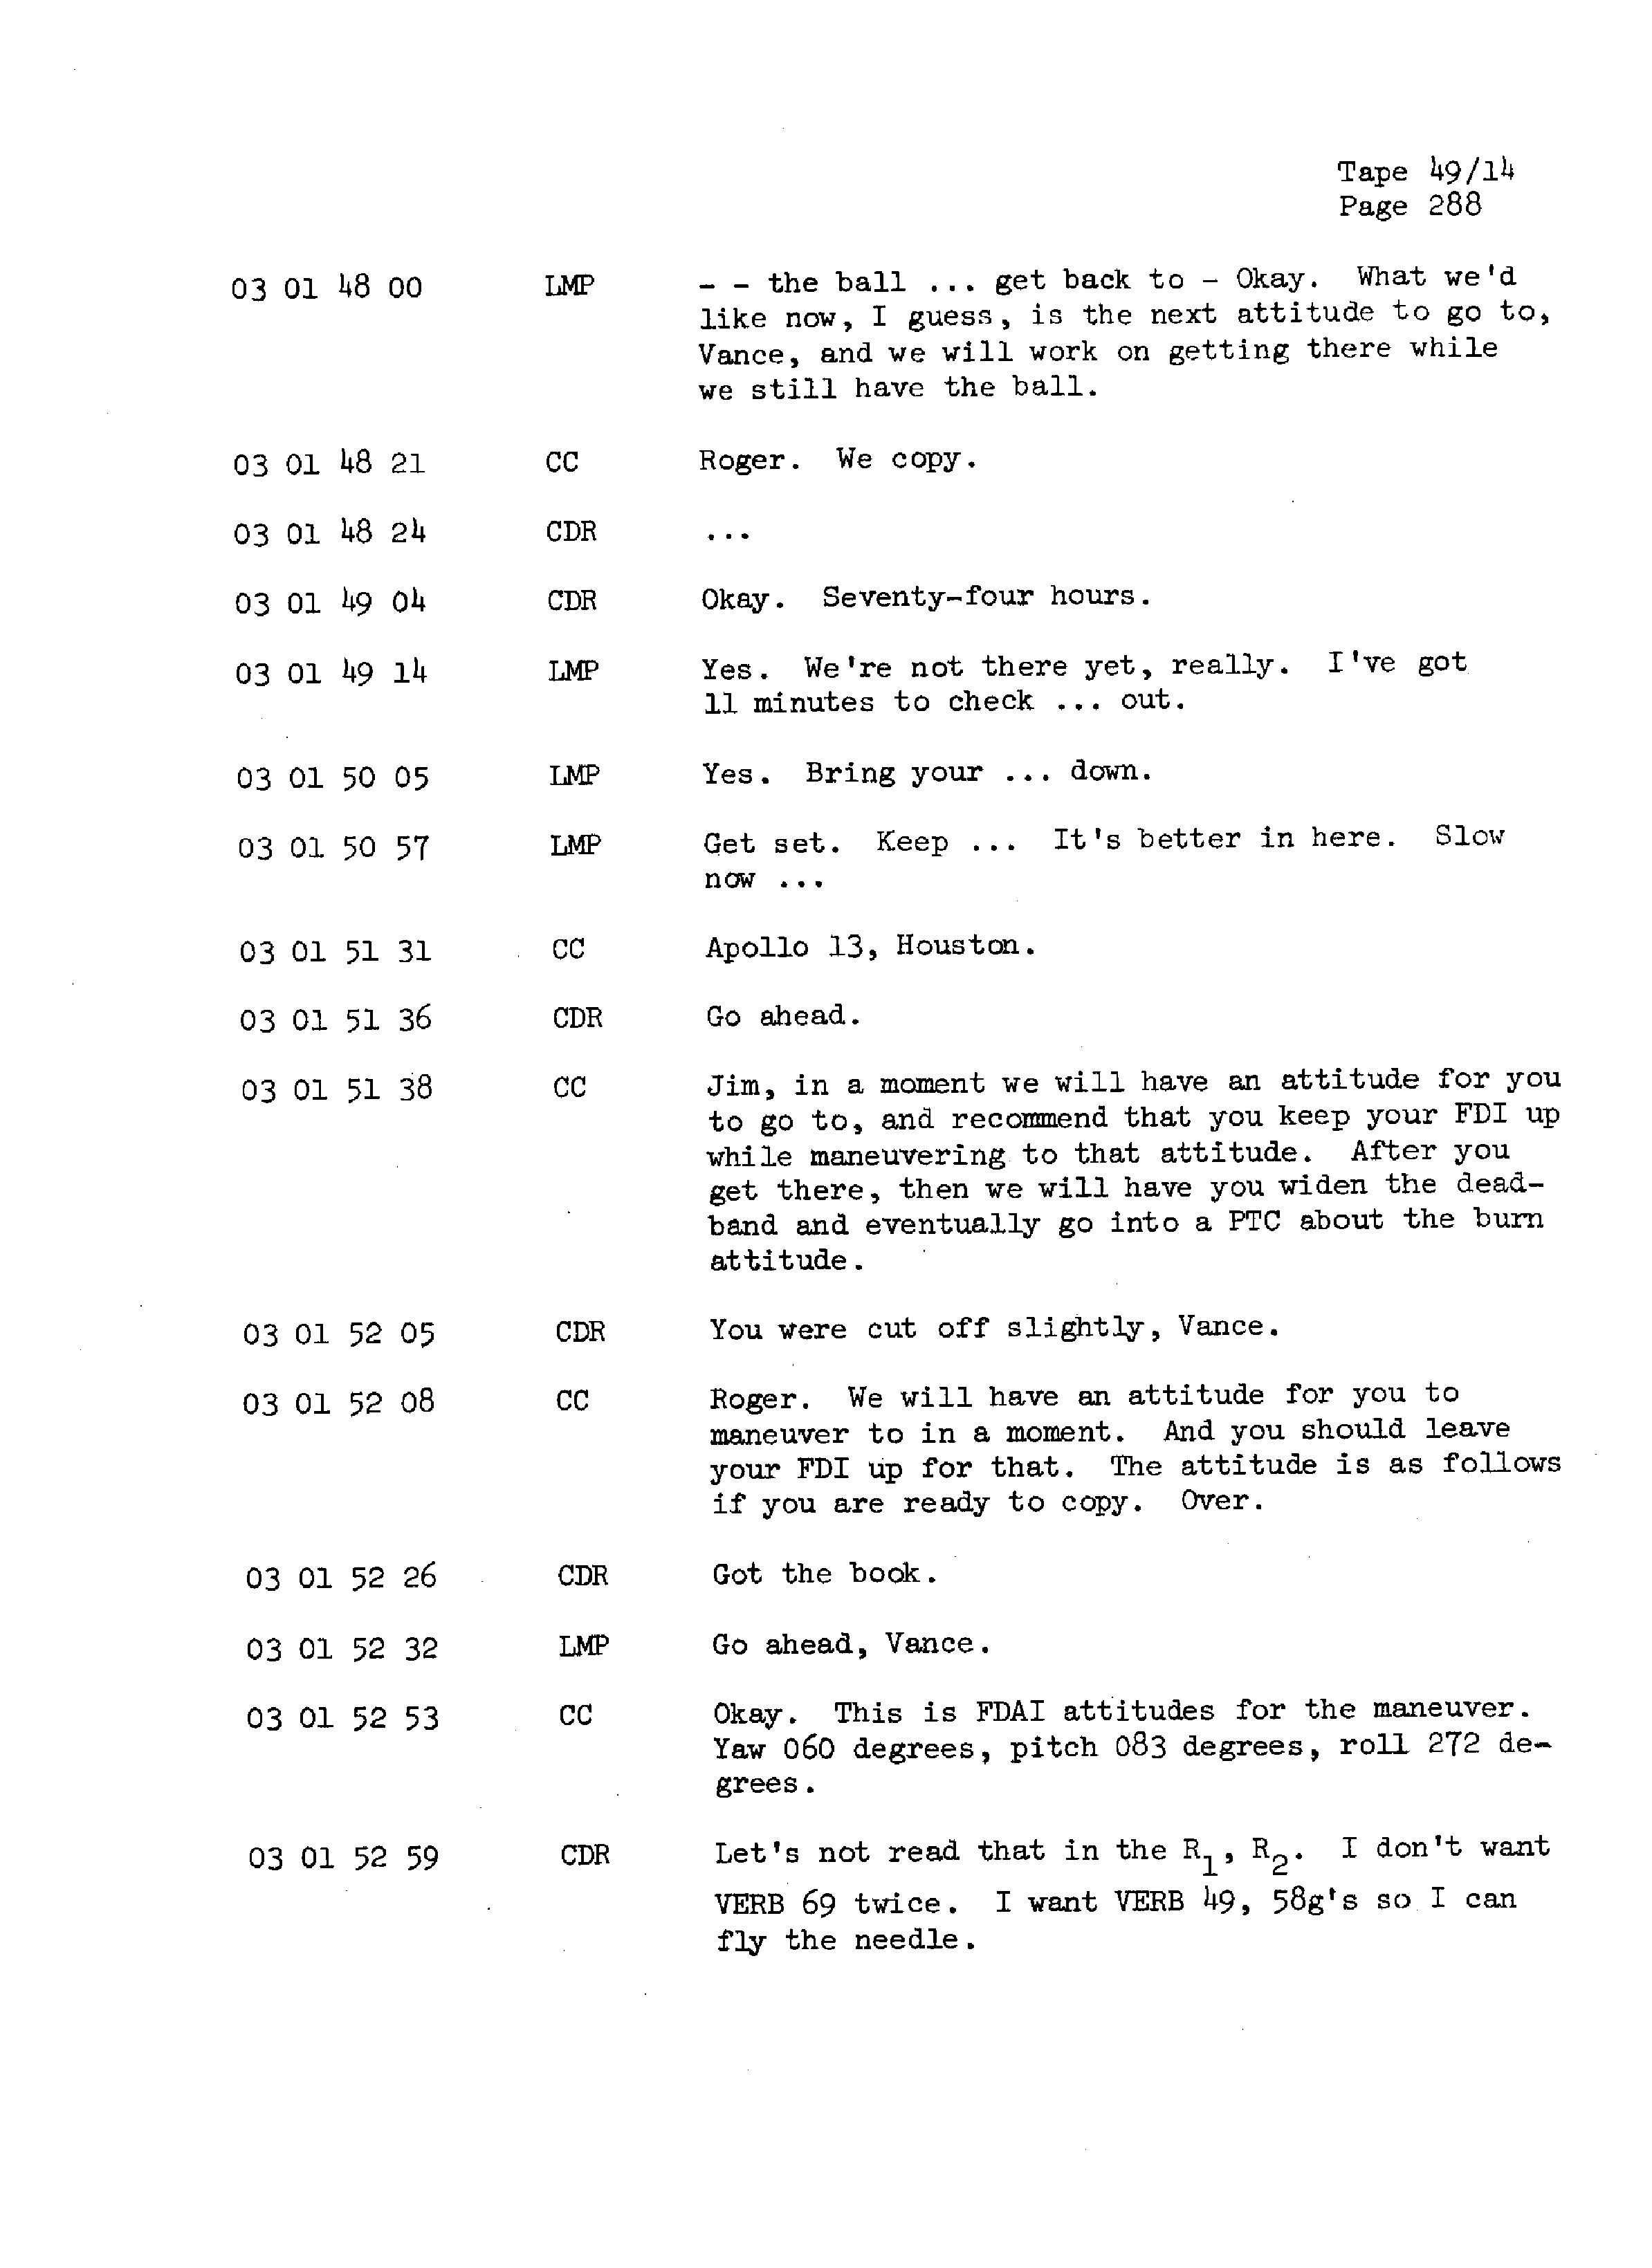 Page 295 of Apollo 13’s original transcript